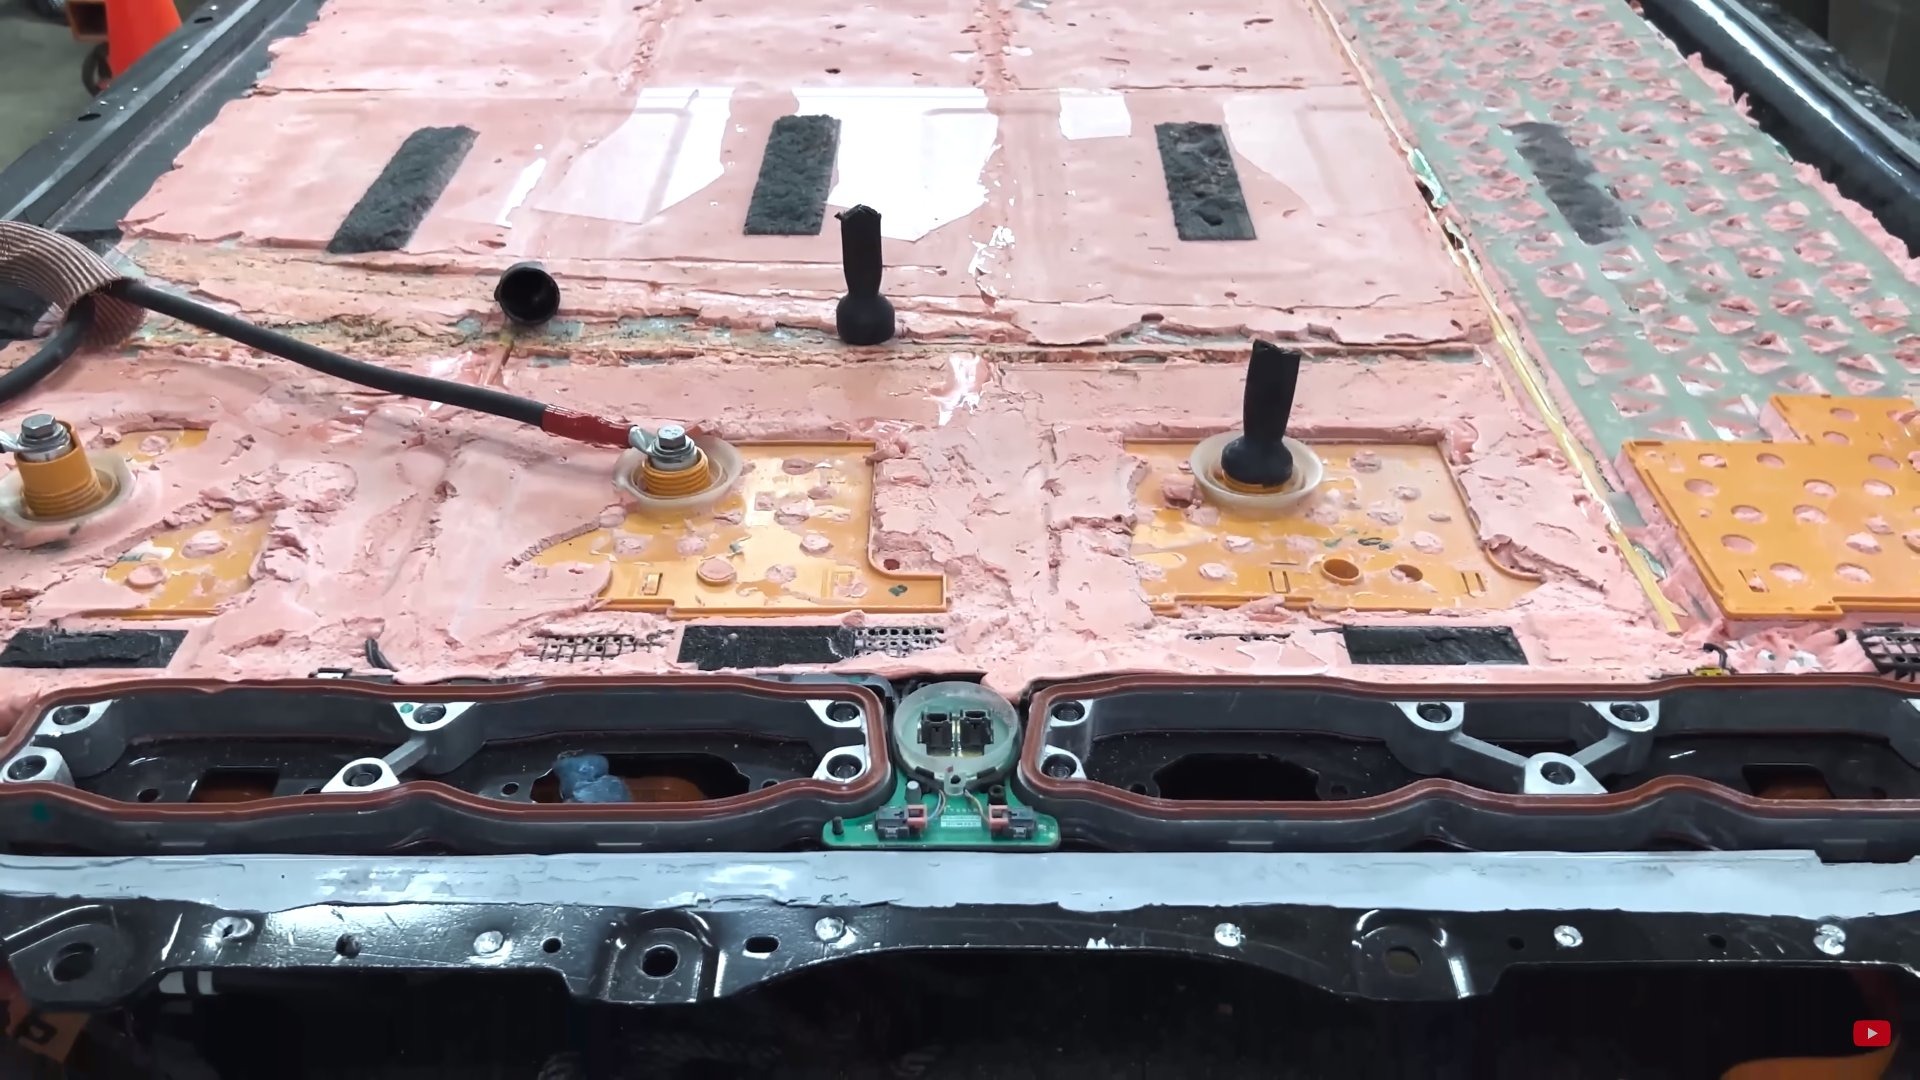 Tháo tung bộ pin 'xịn nhất' của xe điện Tesla, nhóm chuyên gia bất ngờ trước bí mật công nghệ của Elon Musk - Ảnh 4.